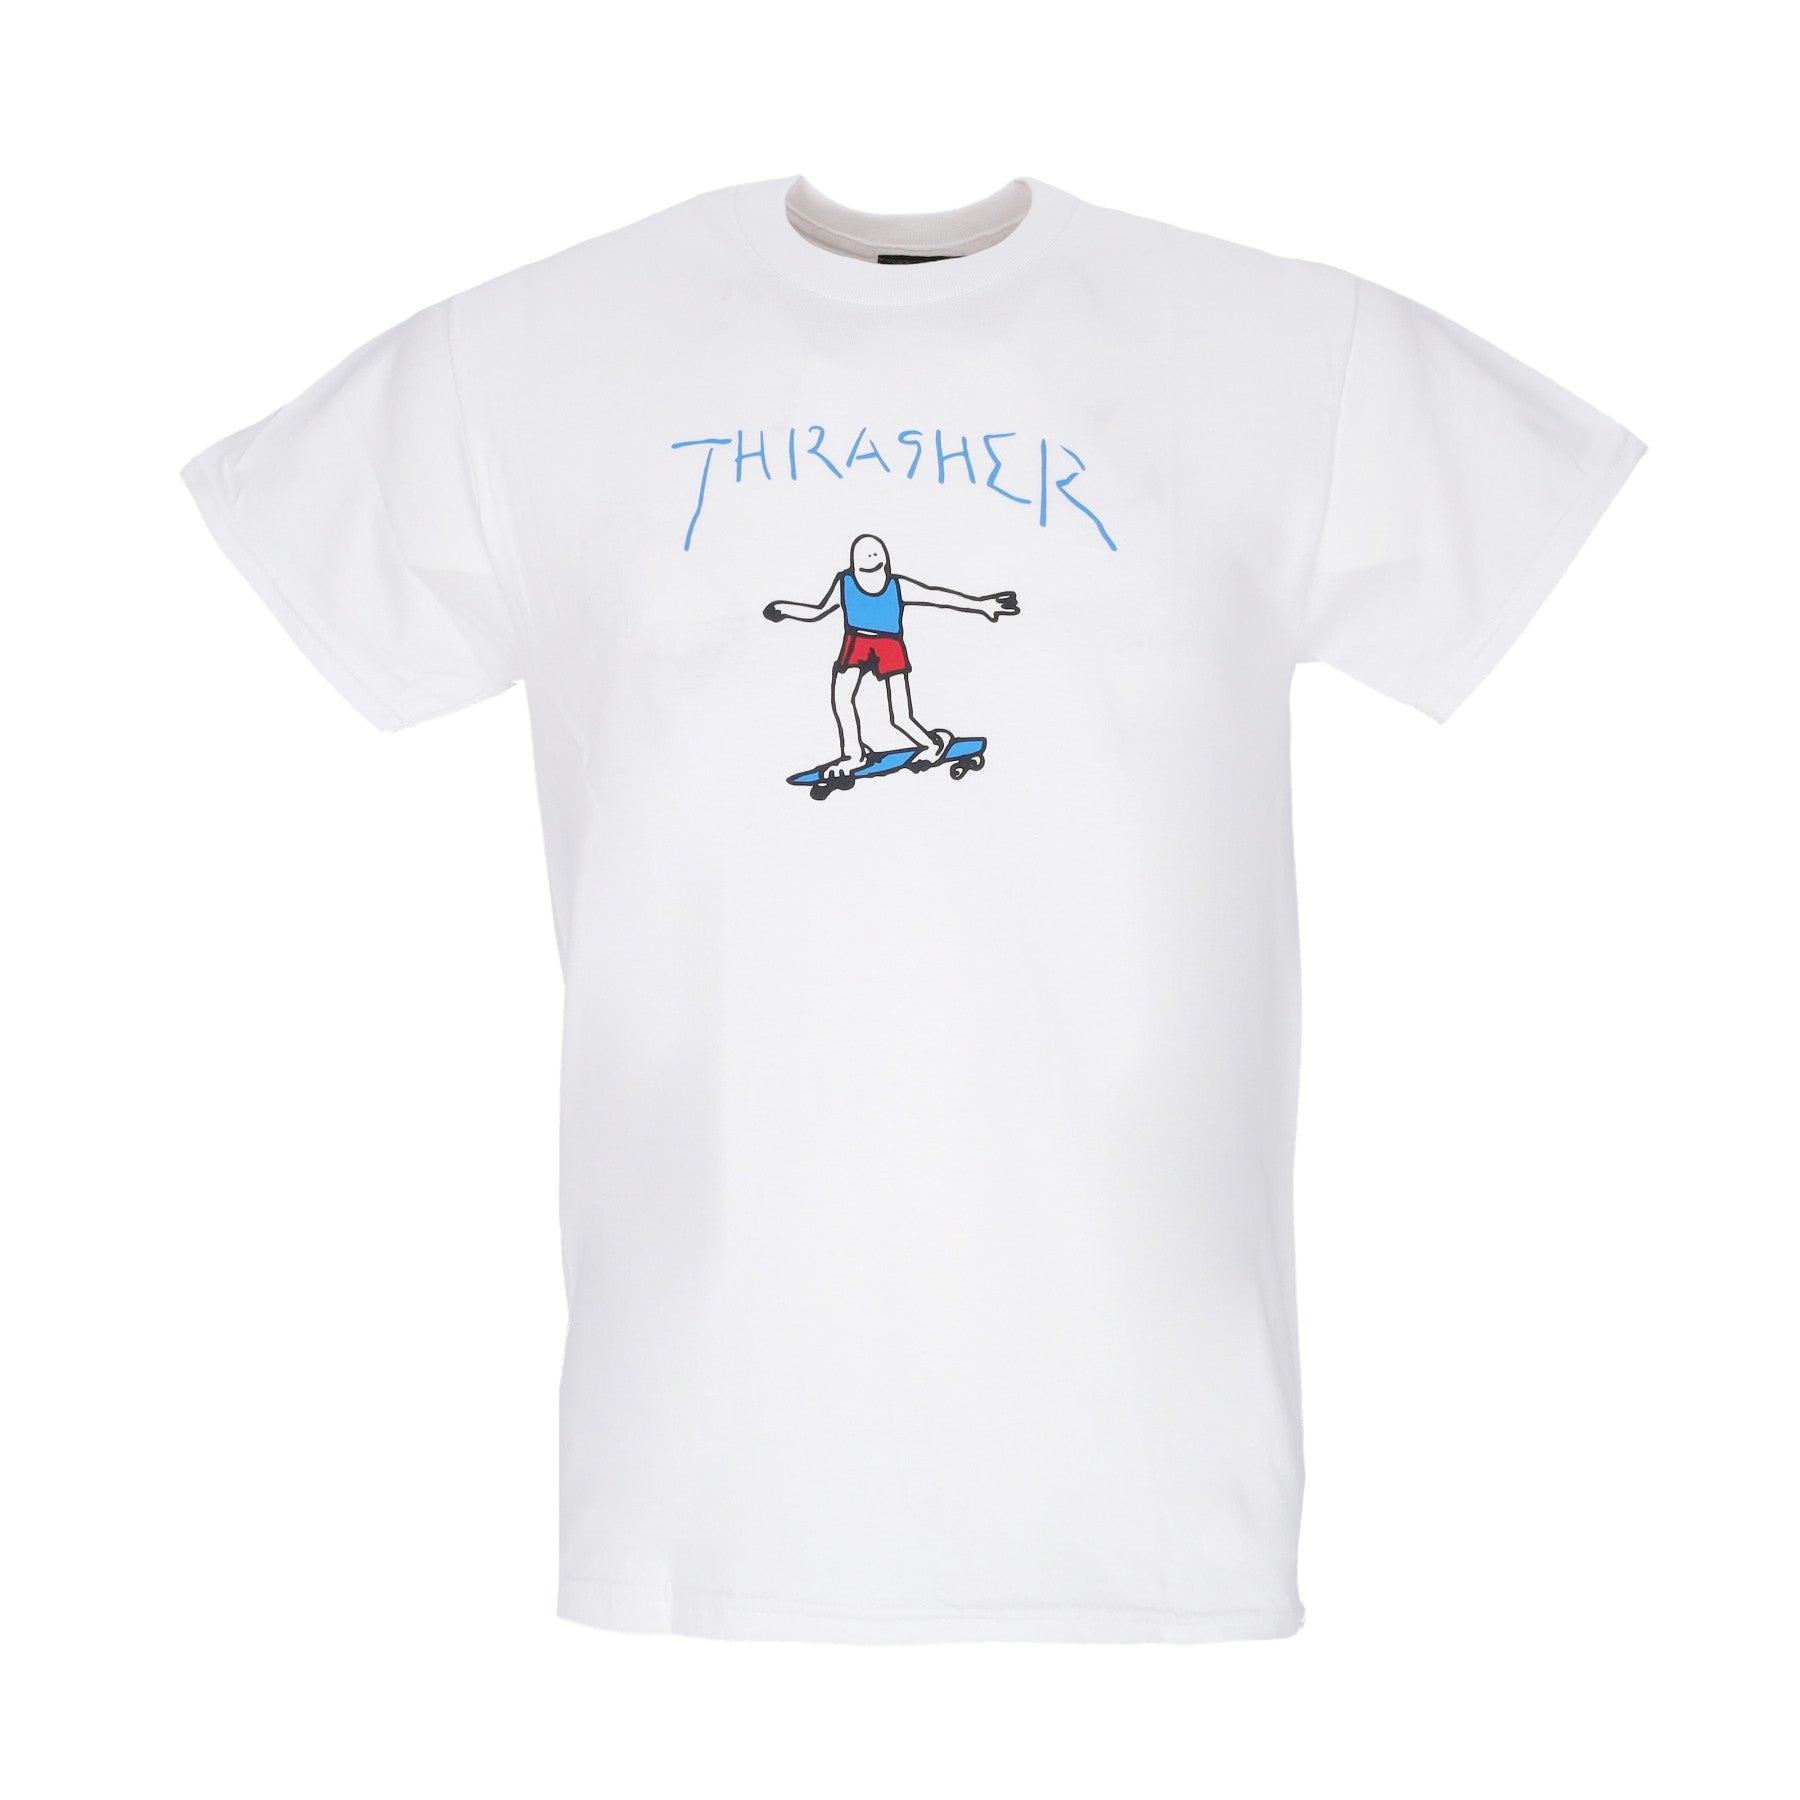 Thrasher, Maglietta Uomo Gonz Logo Tee, White/blue/red